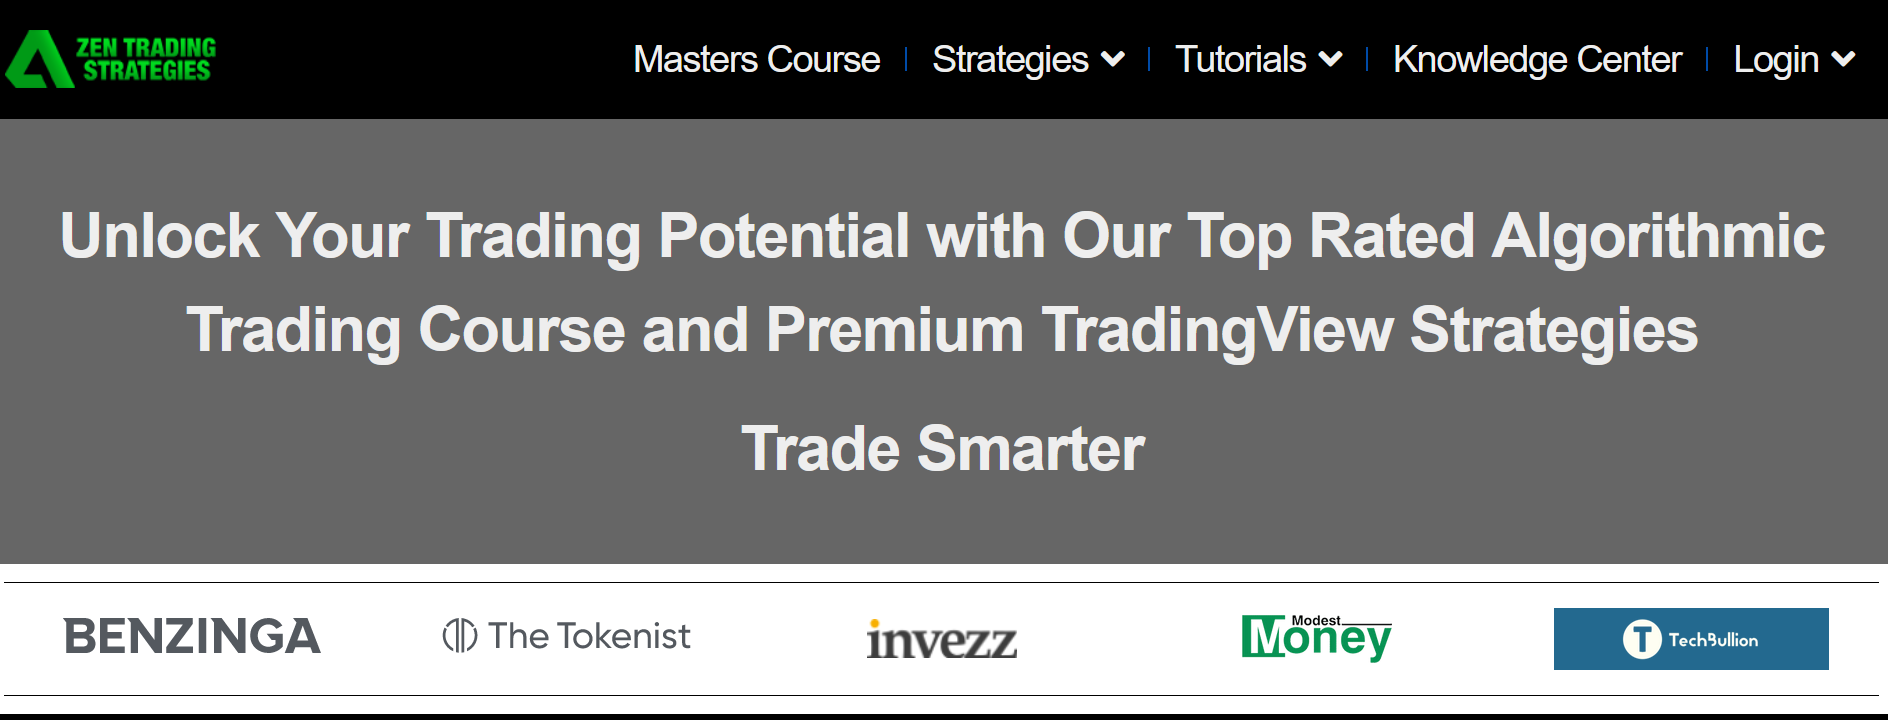 zen trading strategies feature